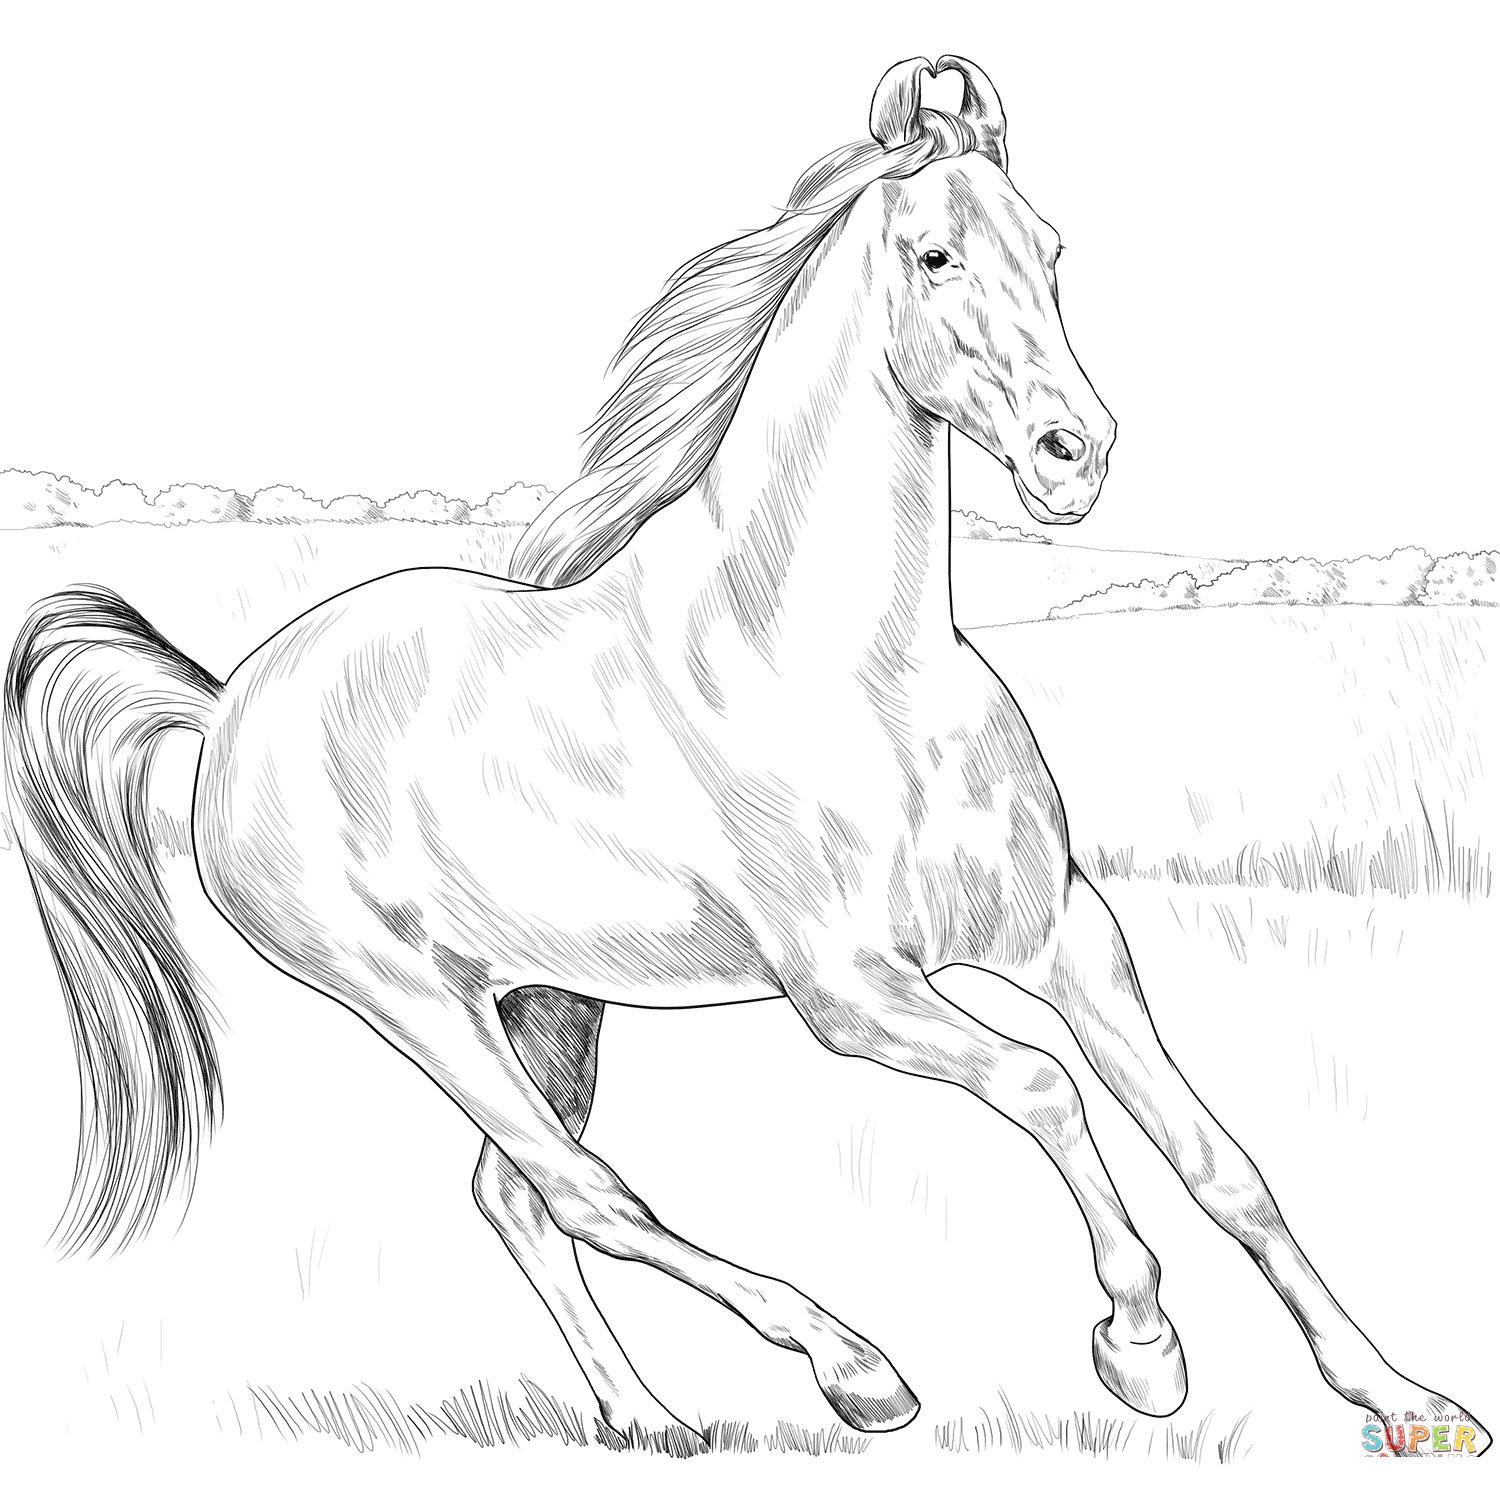 Marwari hobune